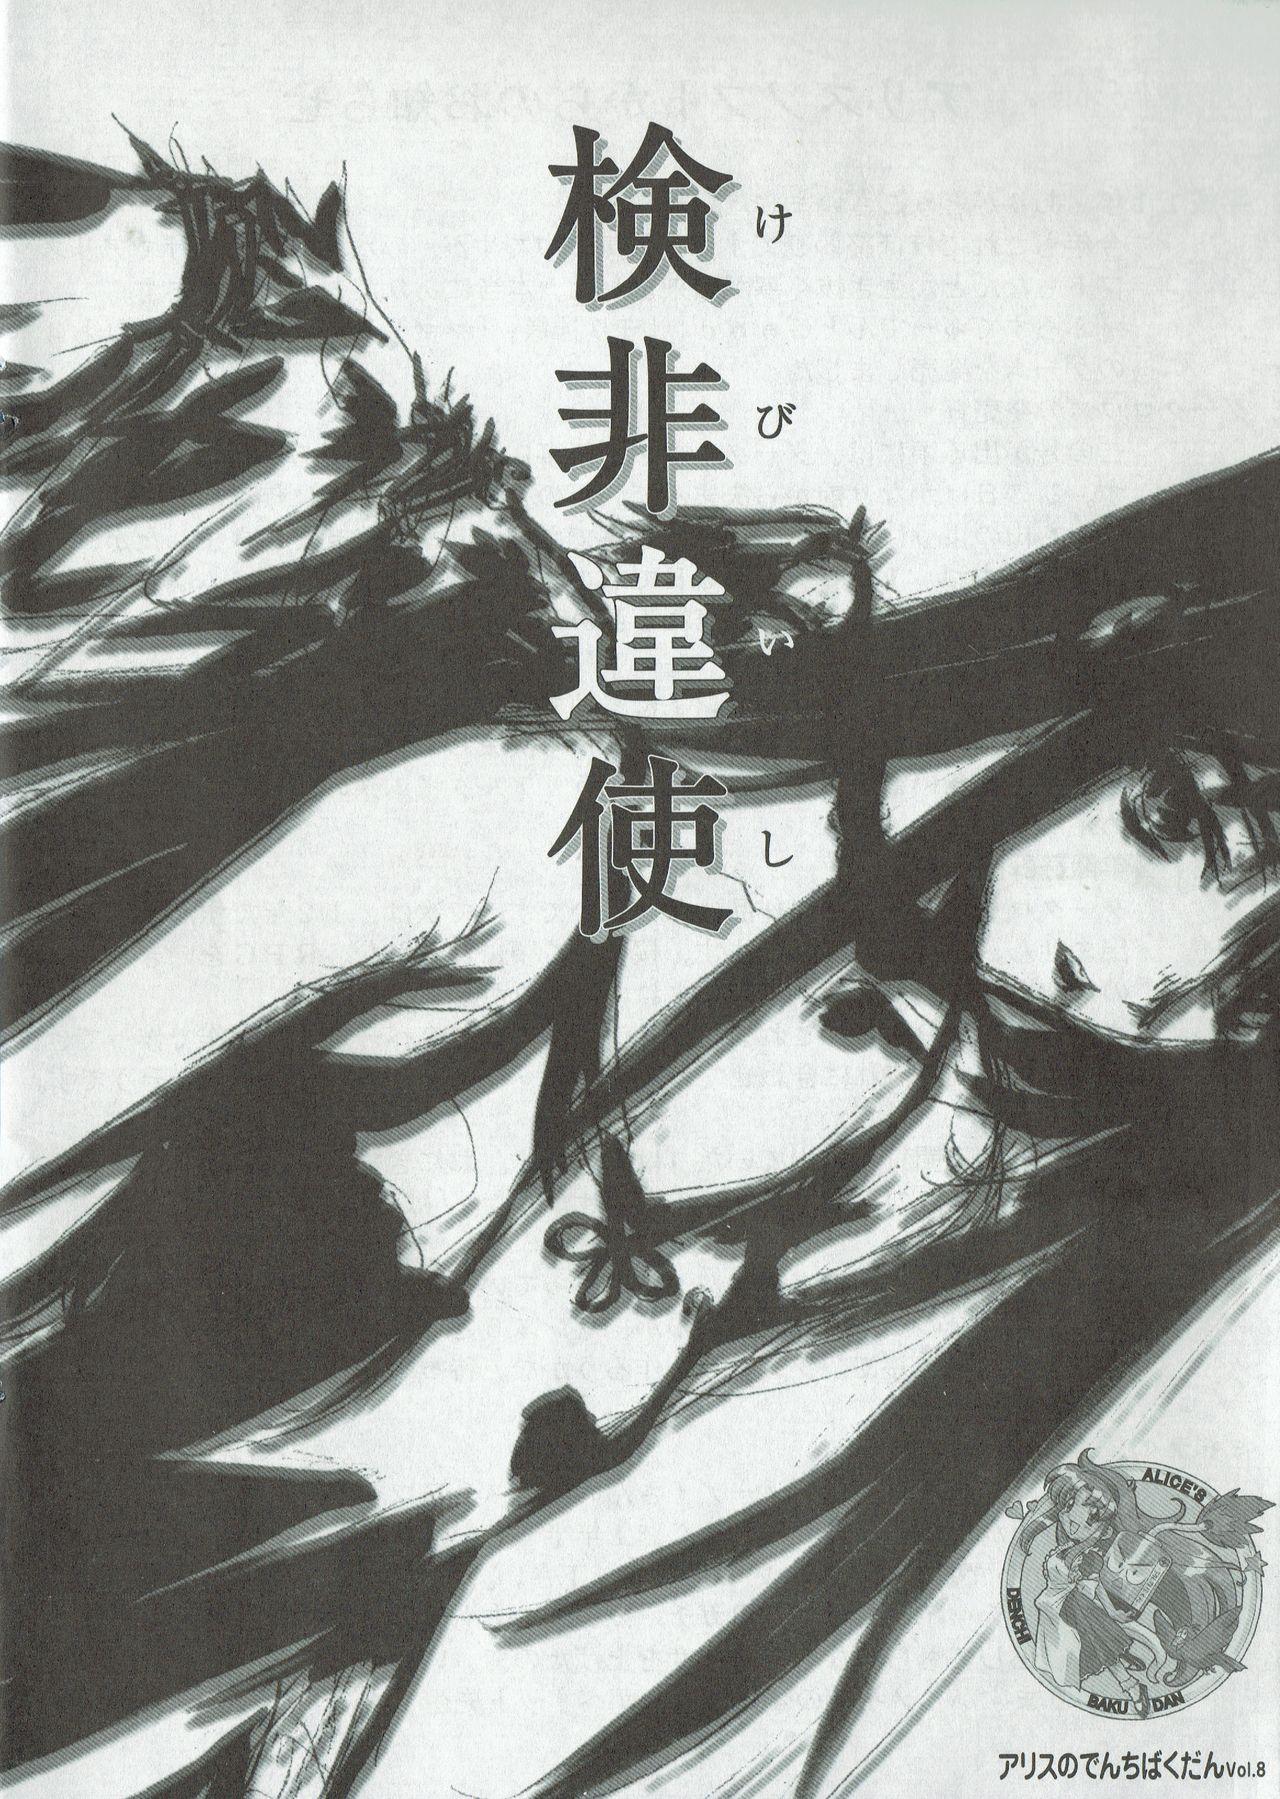 Nude Arisu no Denchi Bakudan Vol. 08 Gayclips - Picture 1